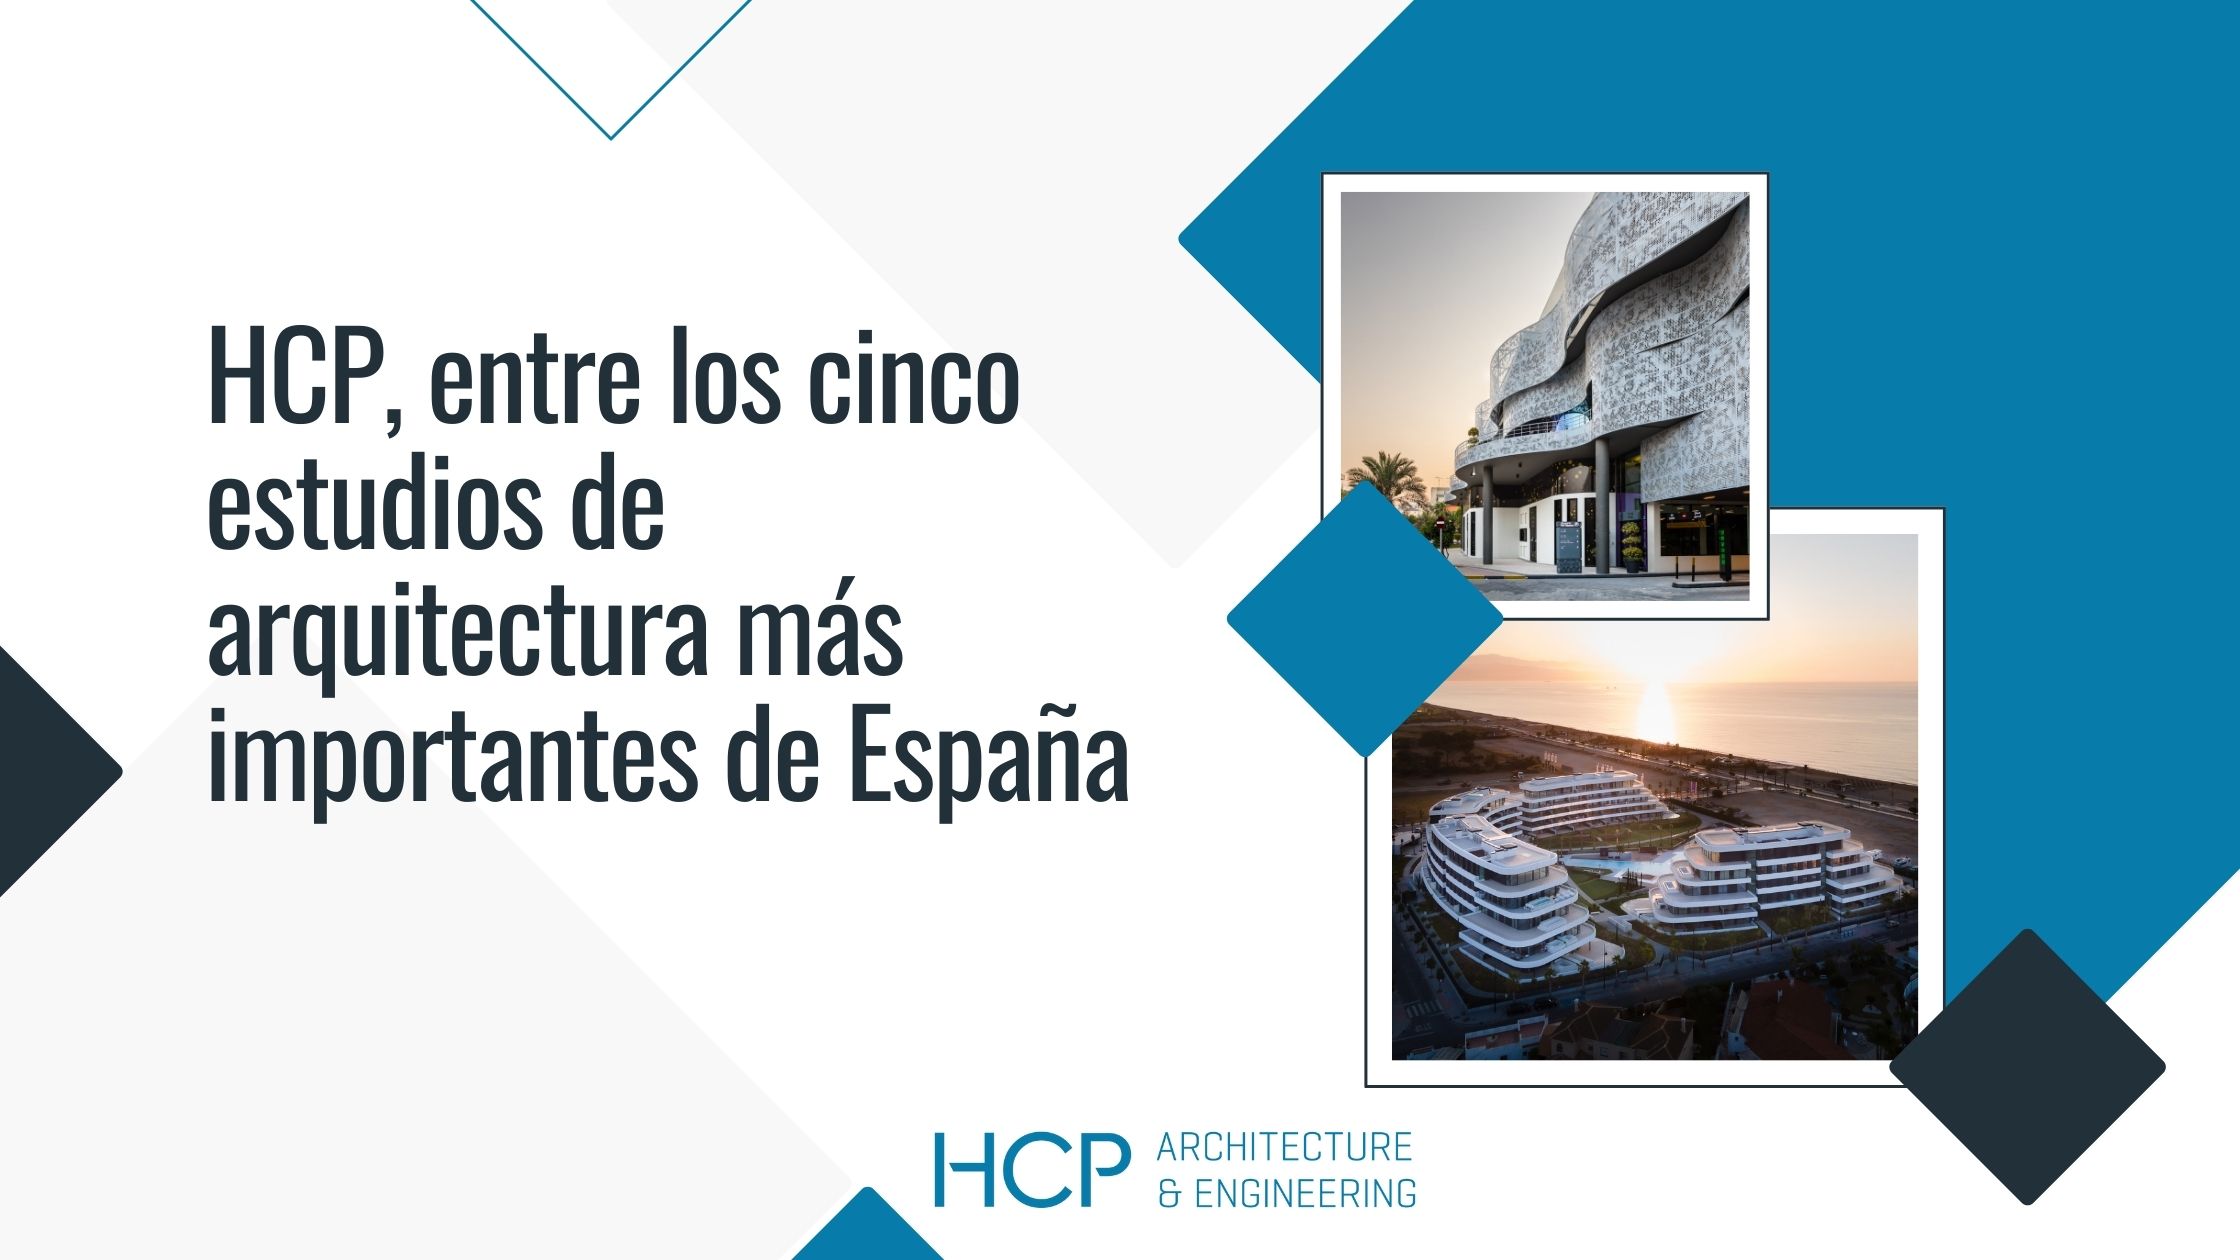 El estudio de arquitectura malagueño HCP, entre los cinco estudios de arquitectura más importantes de España